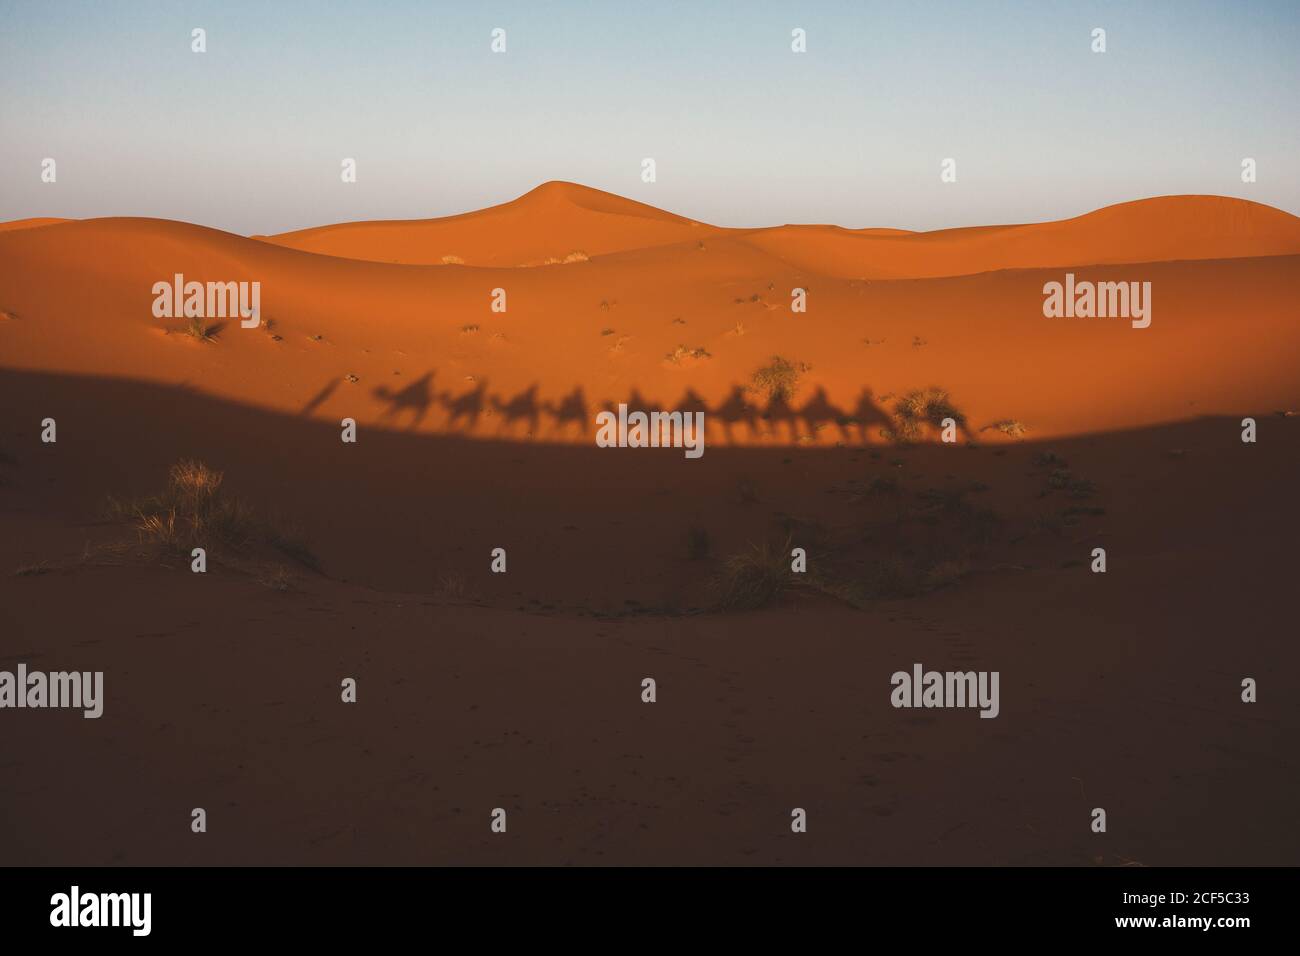 Silhouette ombra di cammelli a piedi in carovana che si riflette sulla duna di sabbia rossa del deserto, Marocco Foto Stock